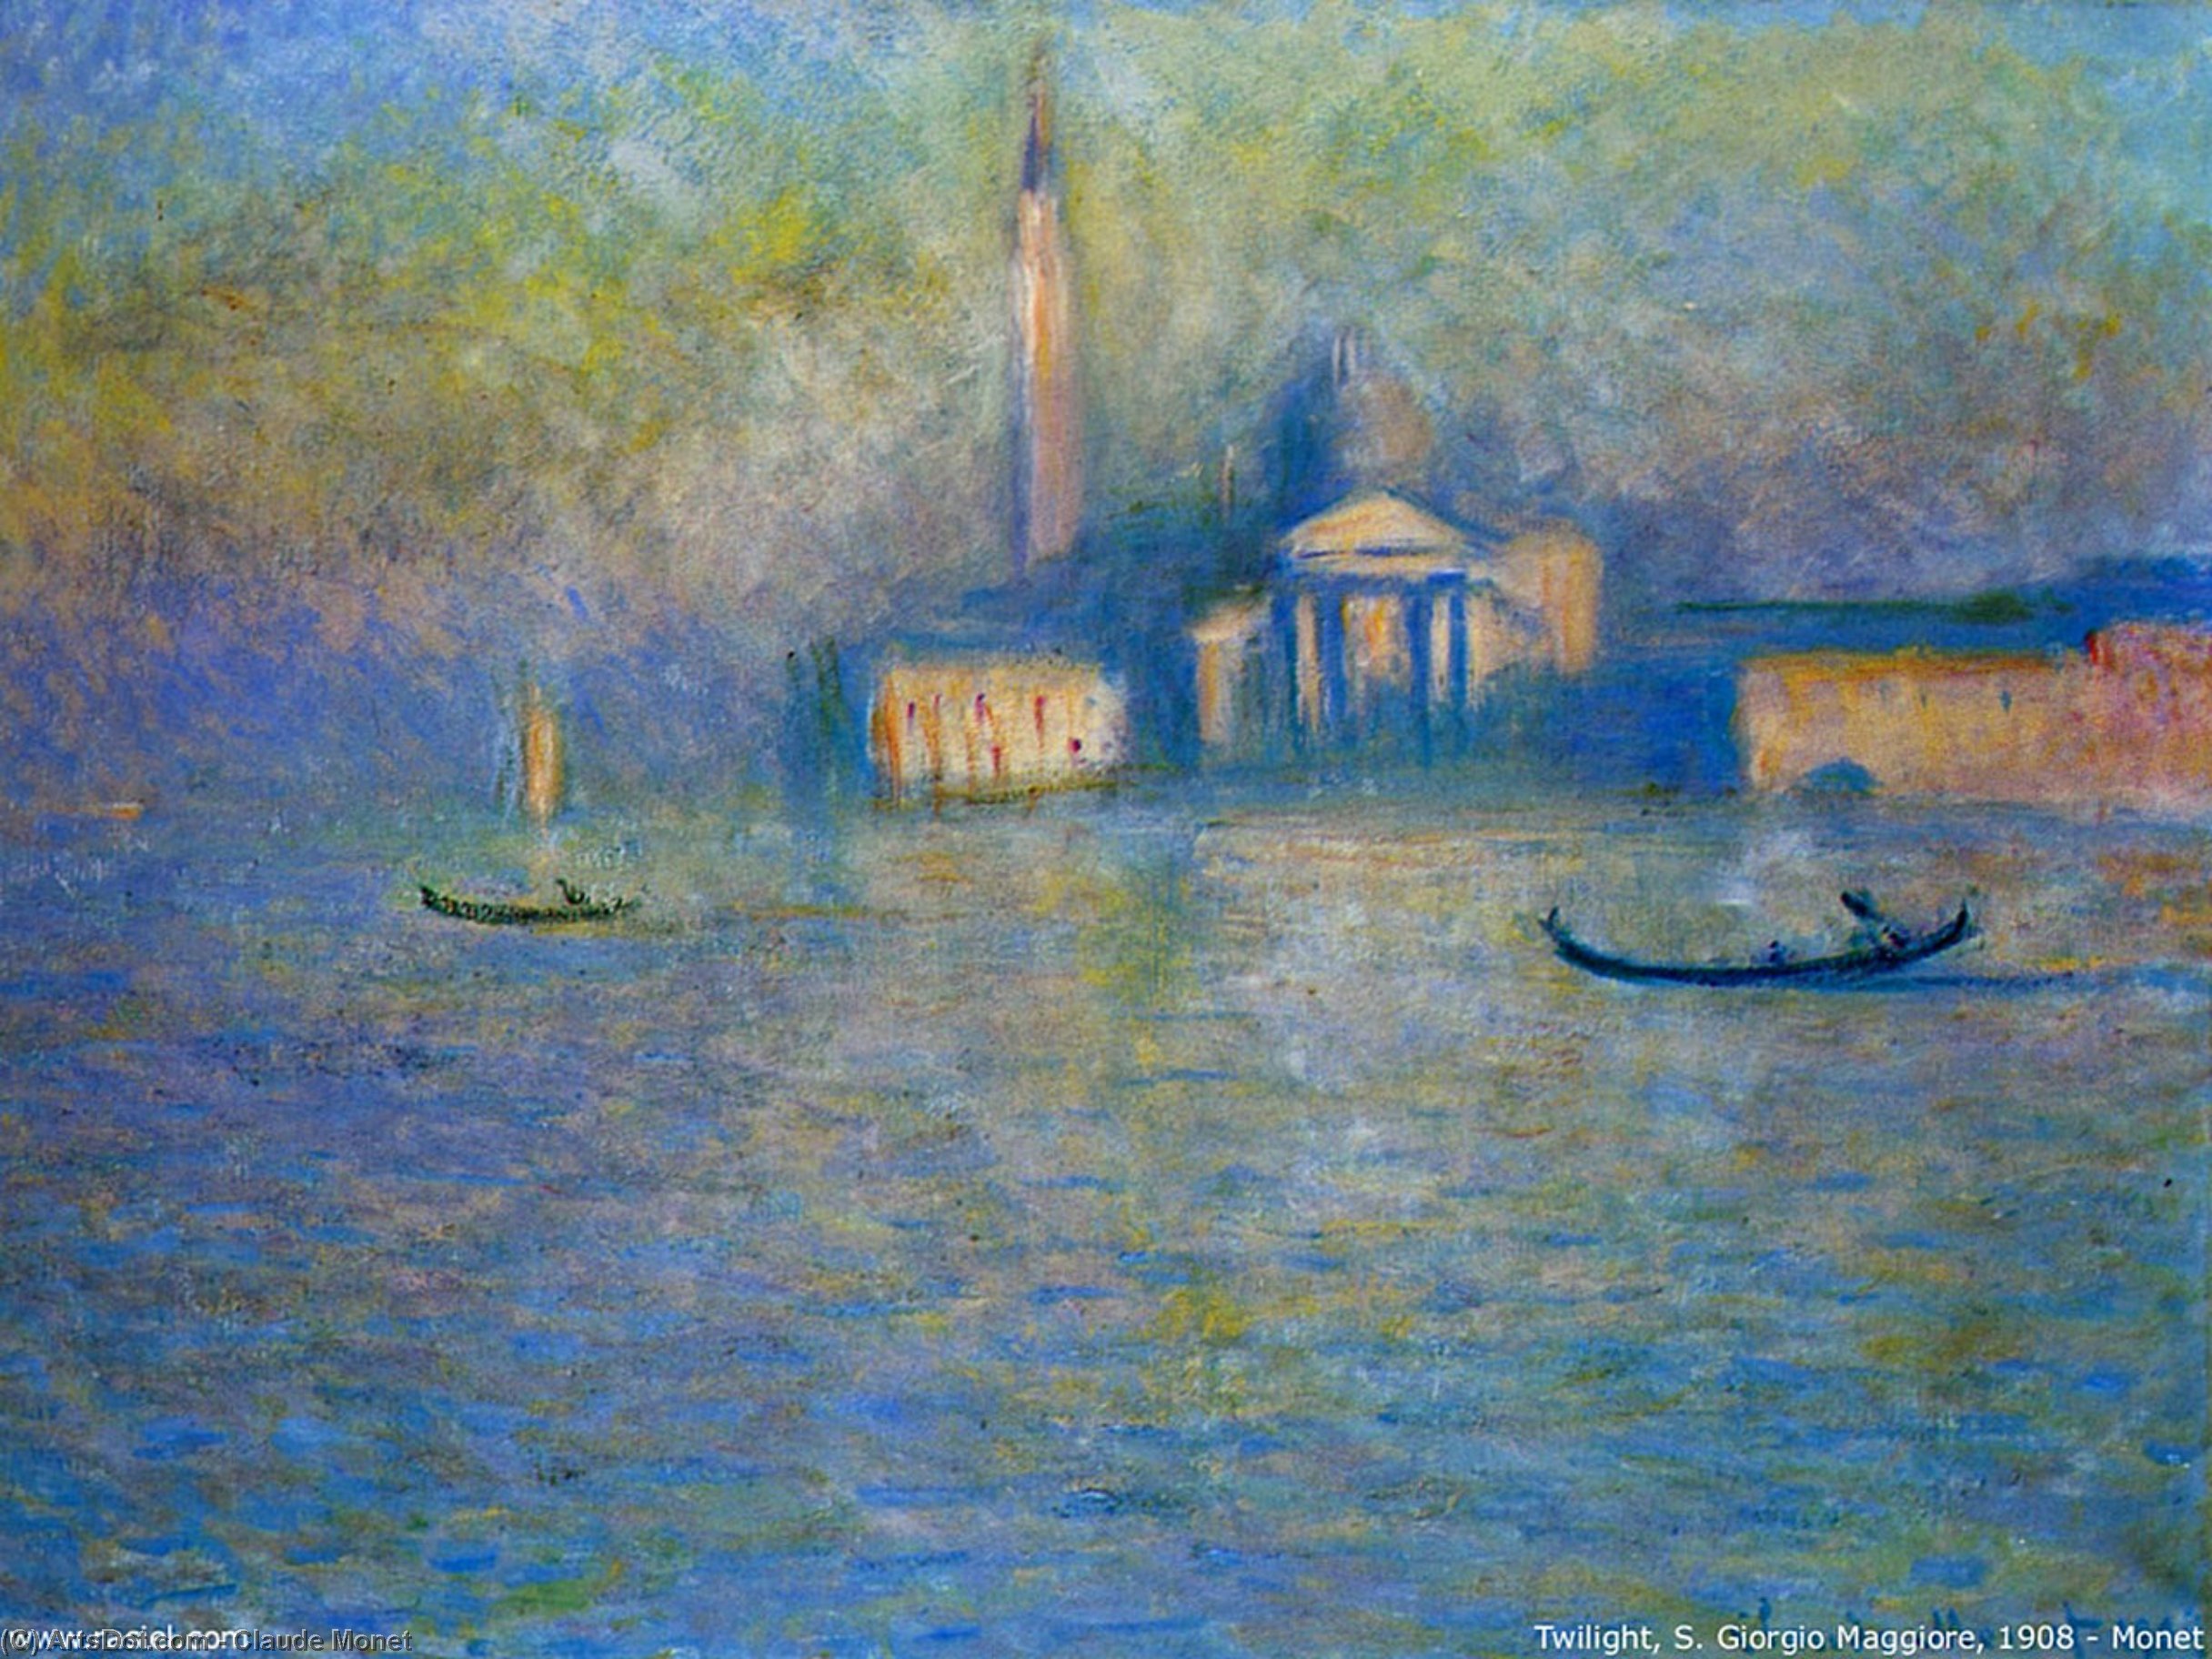 WikiOO.org - Encyclopedia of Fine Arts - Maleri, Artwork Claude Monet - San Giorgio Maggiore, Twilight